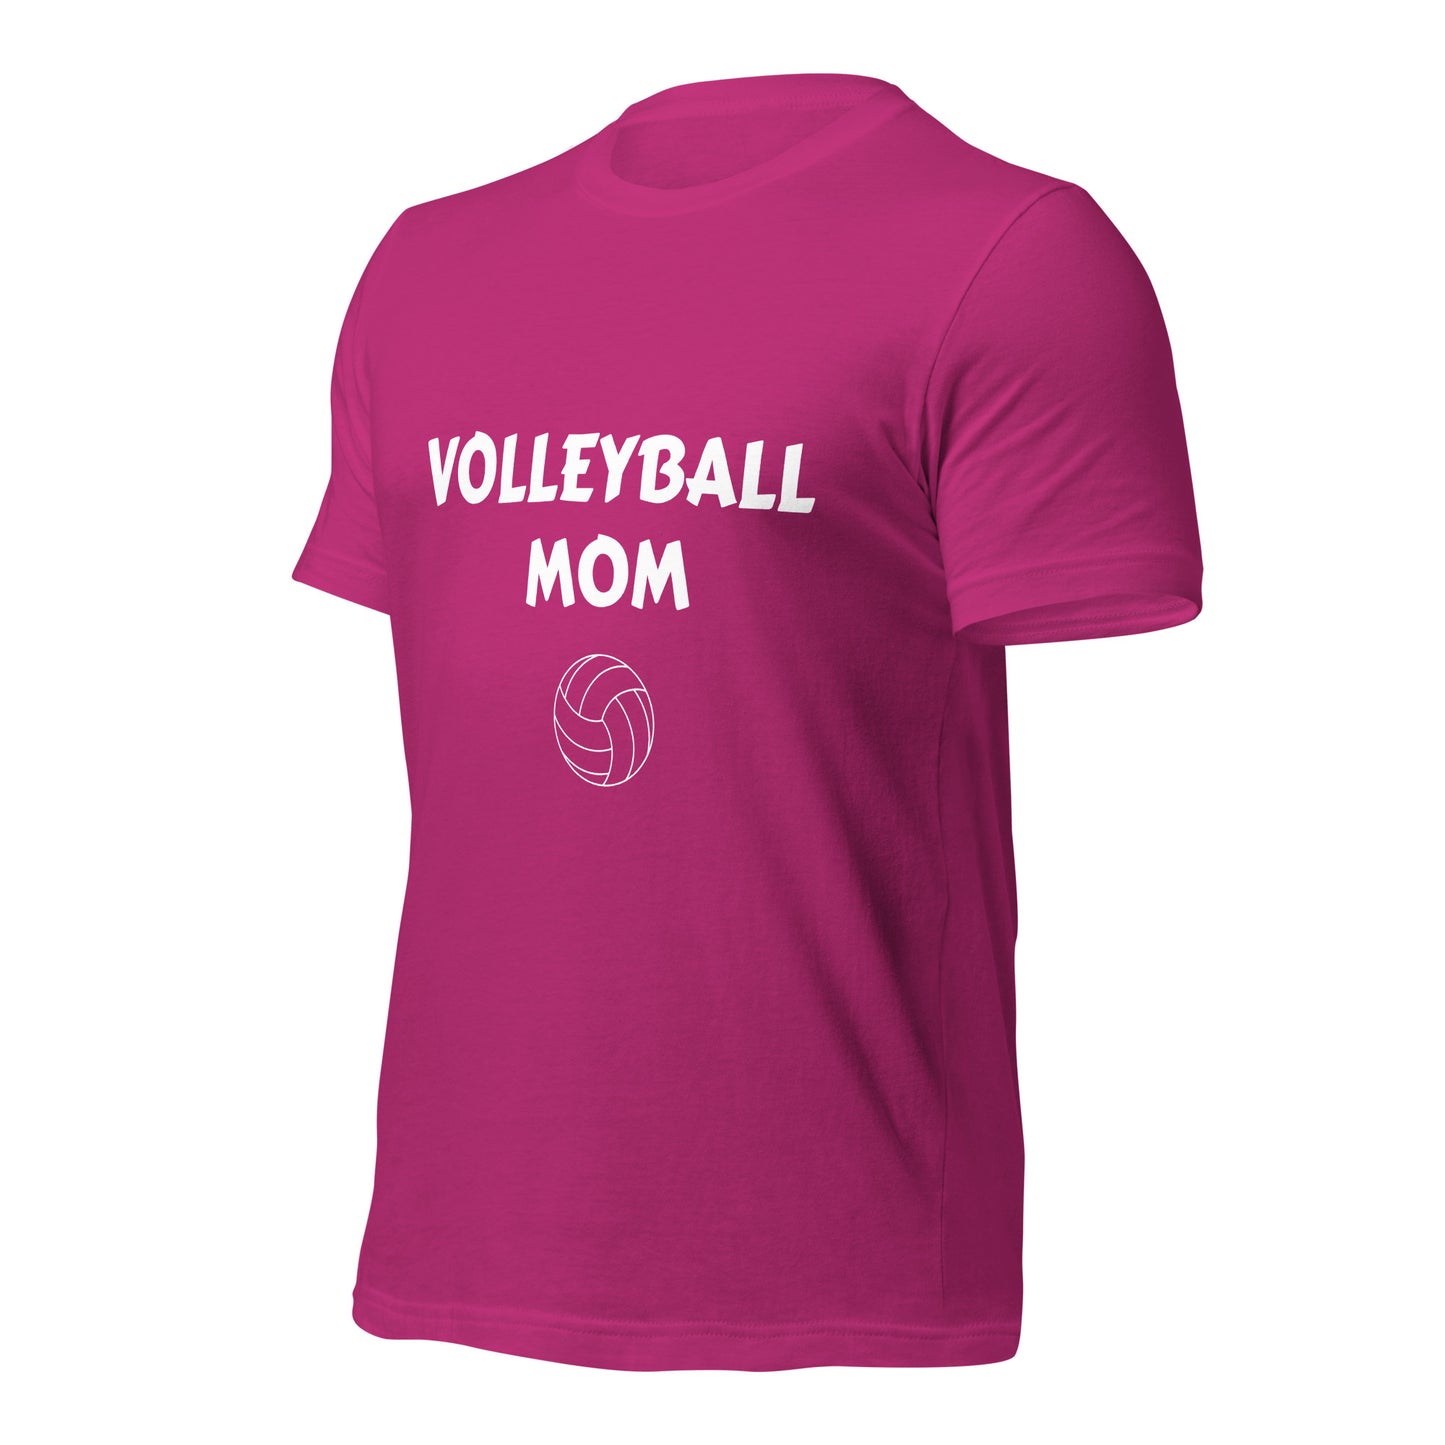 Volleyball Mom Printed Tshirt